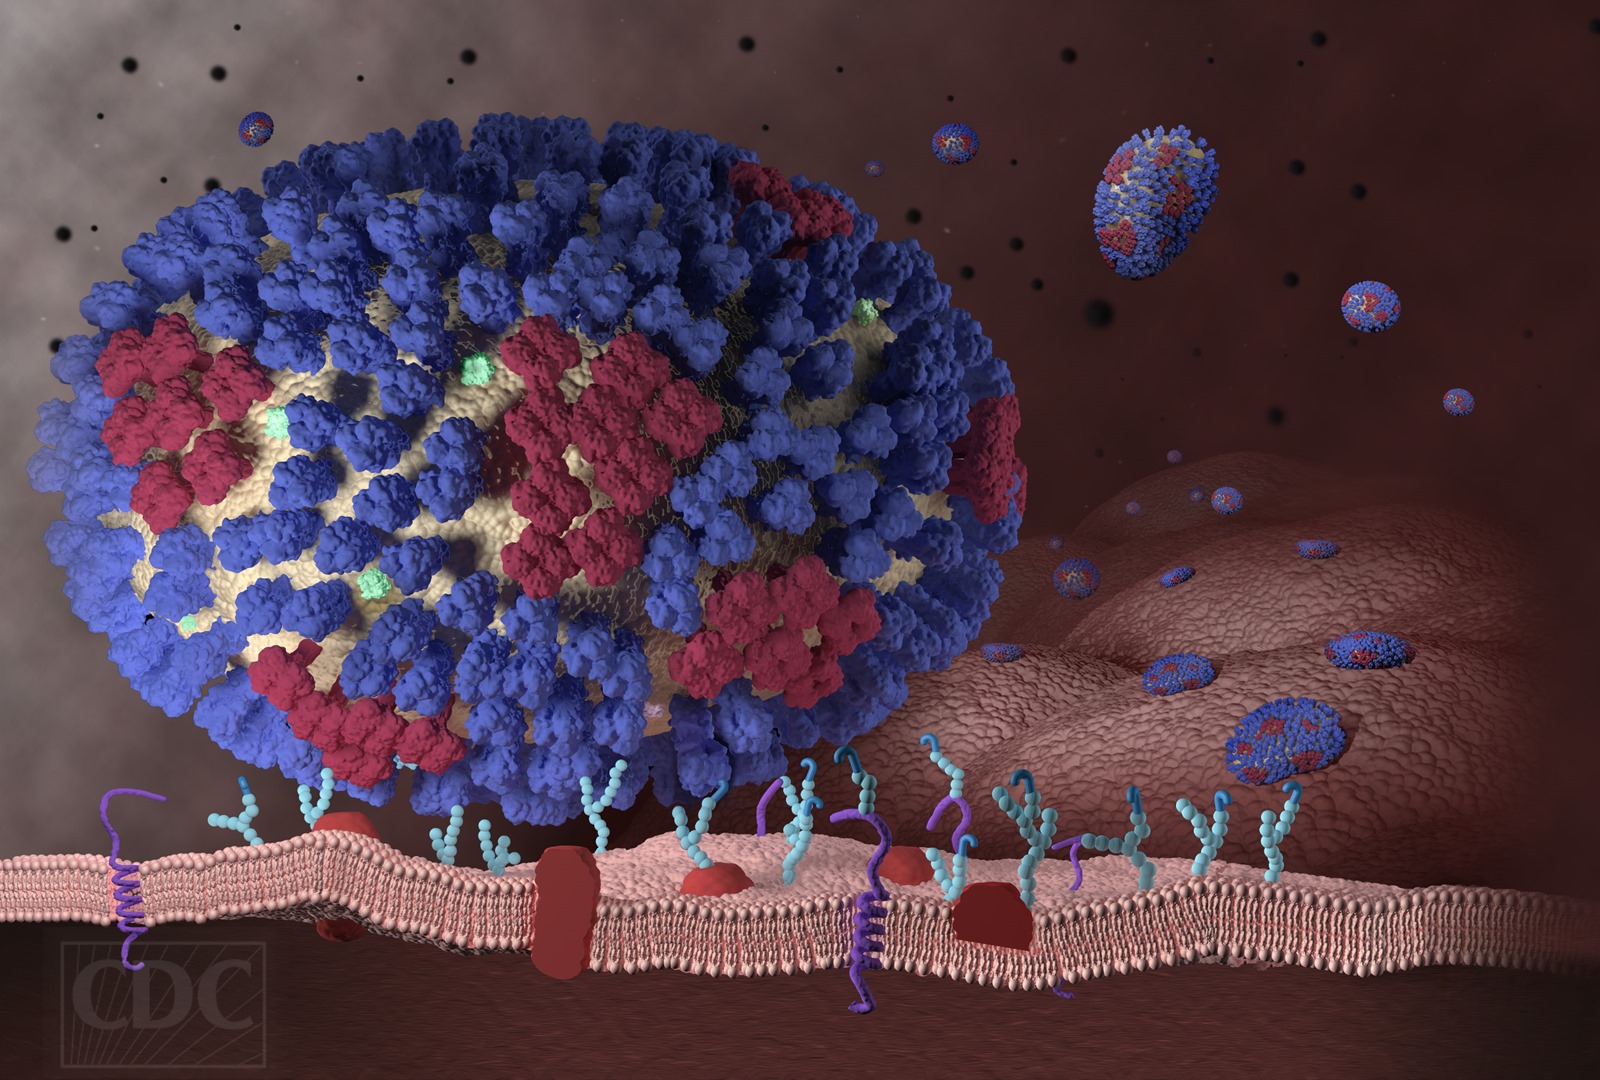 Comment le virus de la grippe insère son ADN dans nos cellules